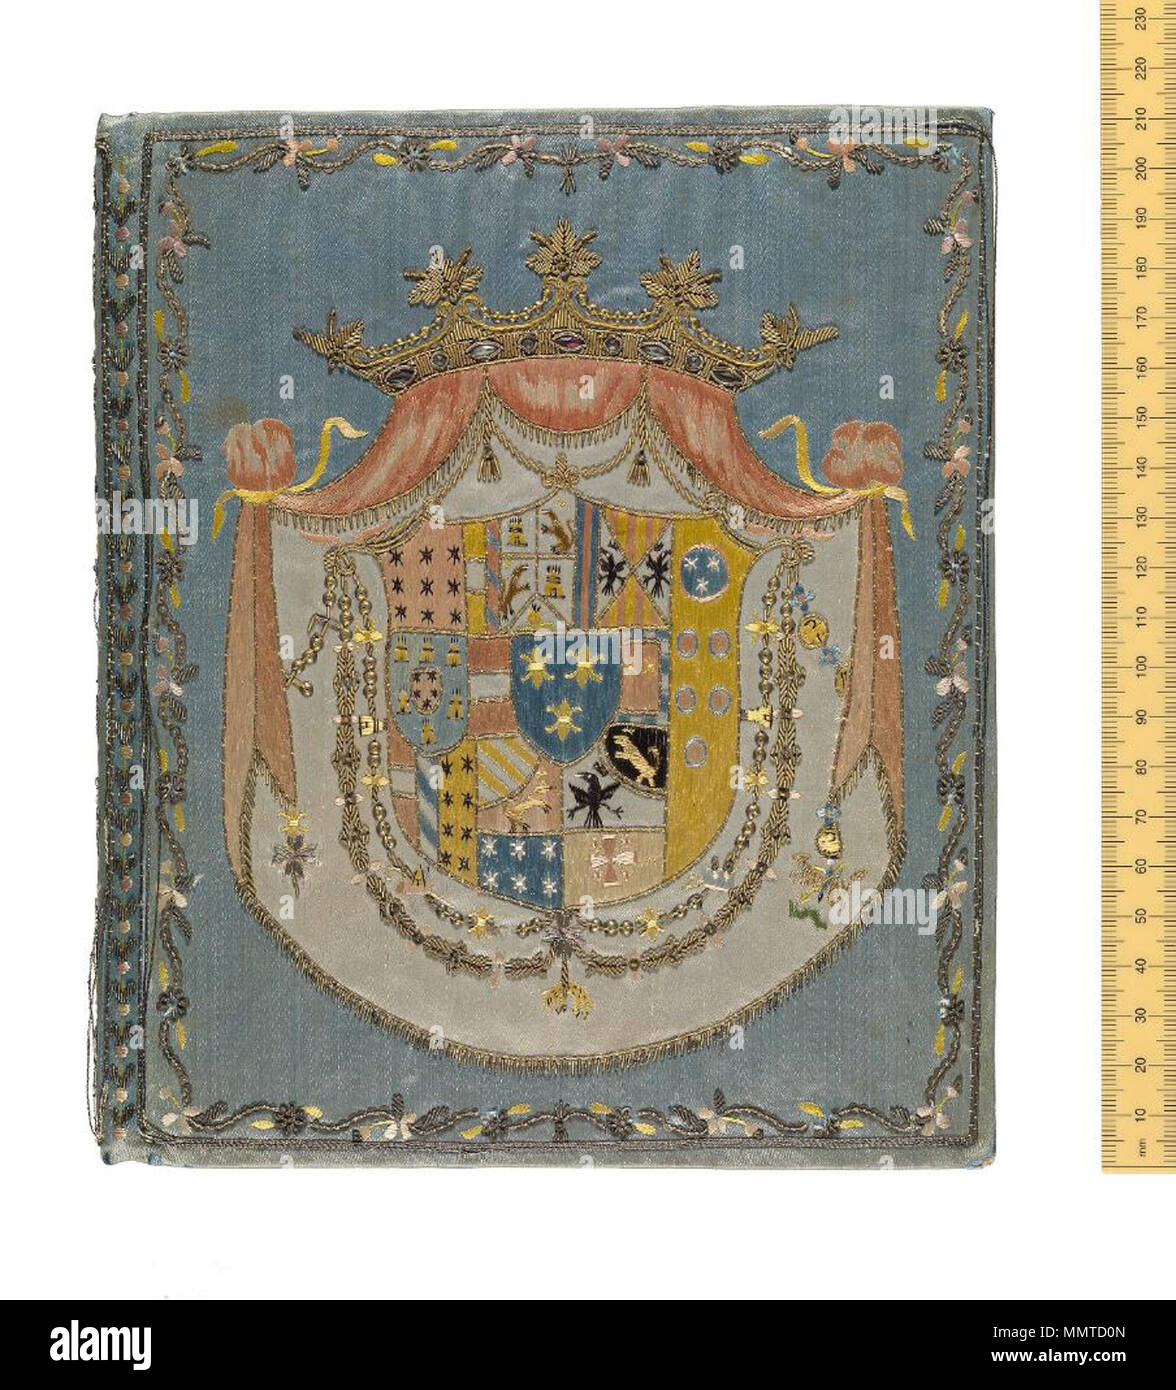 Ein Ausdruck von Autorität. Italienisch (Neapel), c 1786. Bestickte  bindend; hellblauer Seide mit großen Erfolg von Ferdinand I., König von  Sizilien (1751 - 1825) Auf den Abdeckungen. Heraldik war oft für